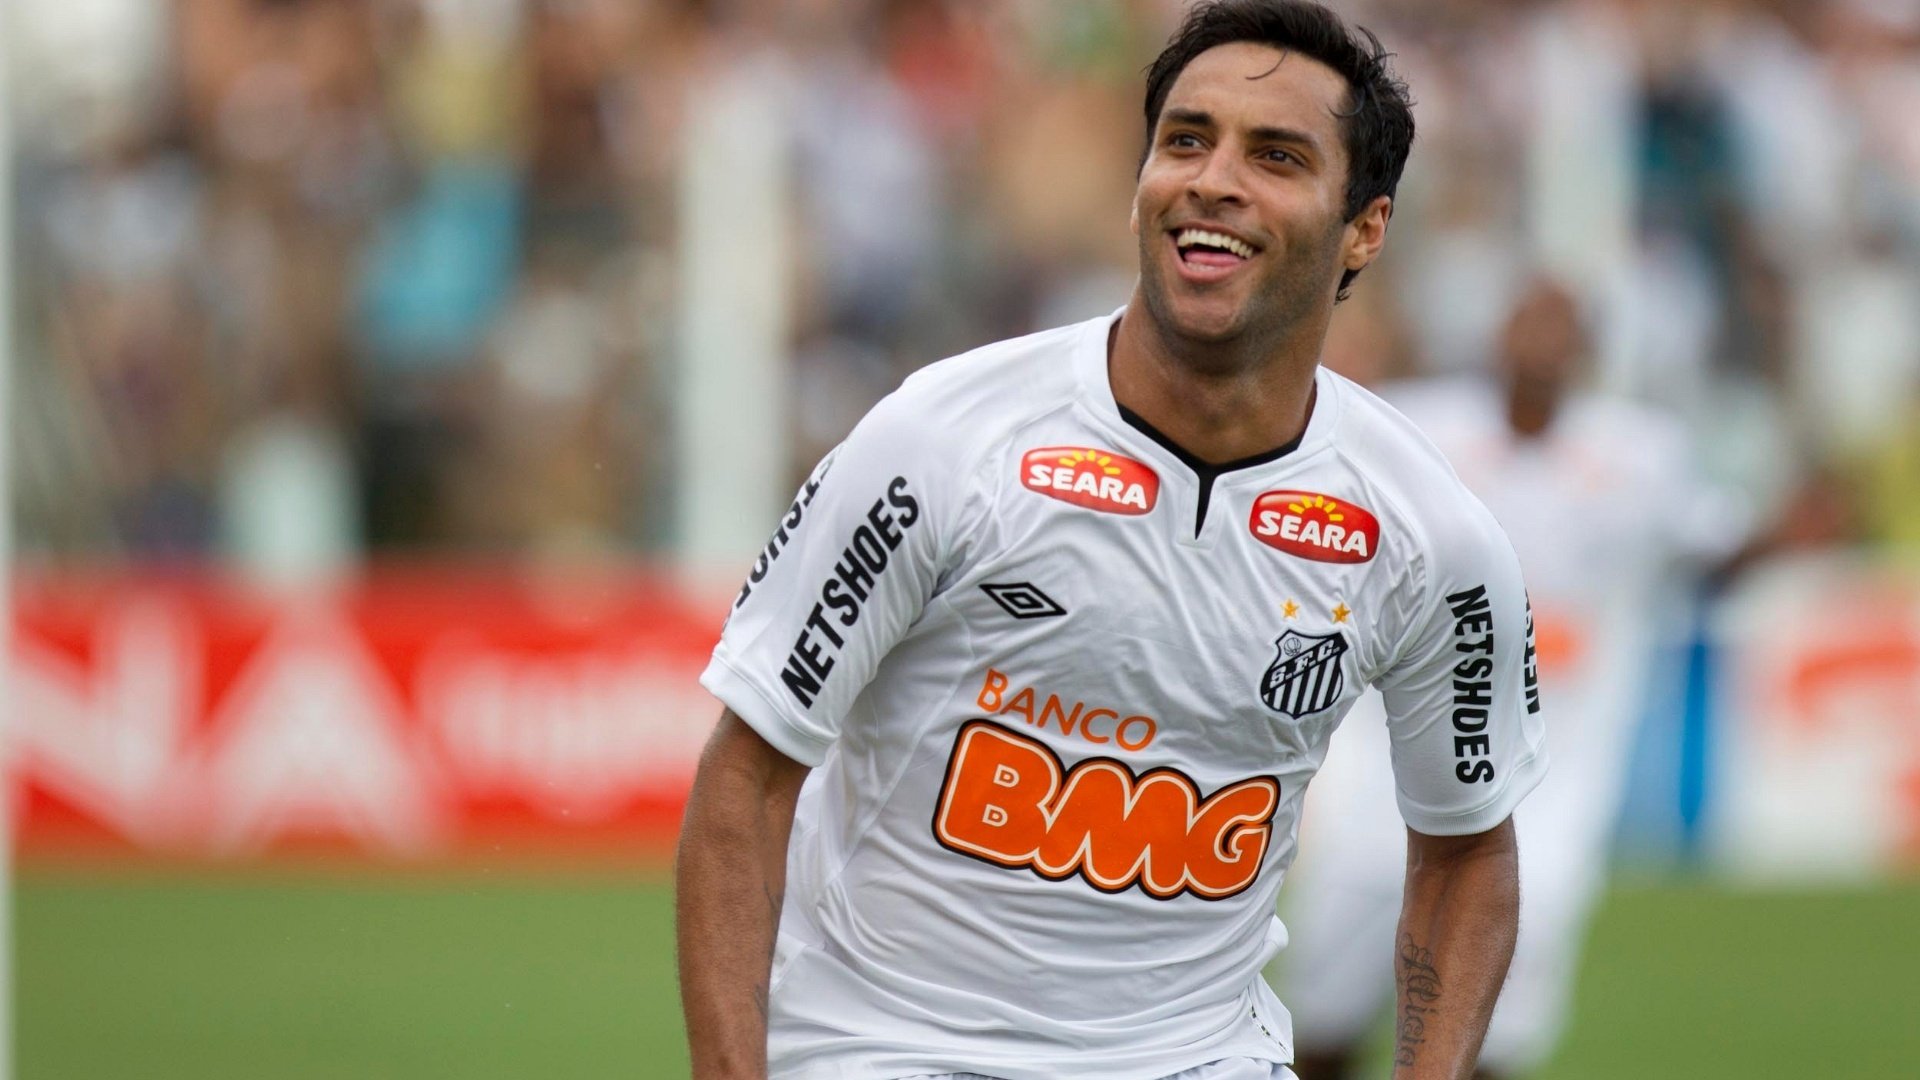 Em 2011, o Santos acertou a contratação do meia Ibson por cerca de R$ 9 milhões ao Spartak de Moscou, da Rússia. Em dois anos, ele fez somente quatro gols no Peixe e saiu para atuar no Flamengo.